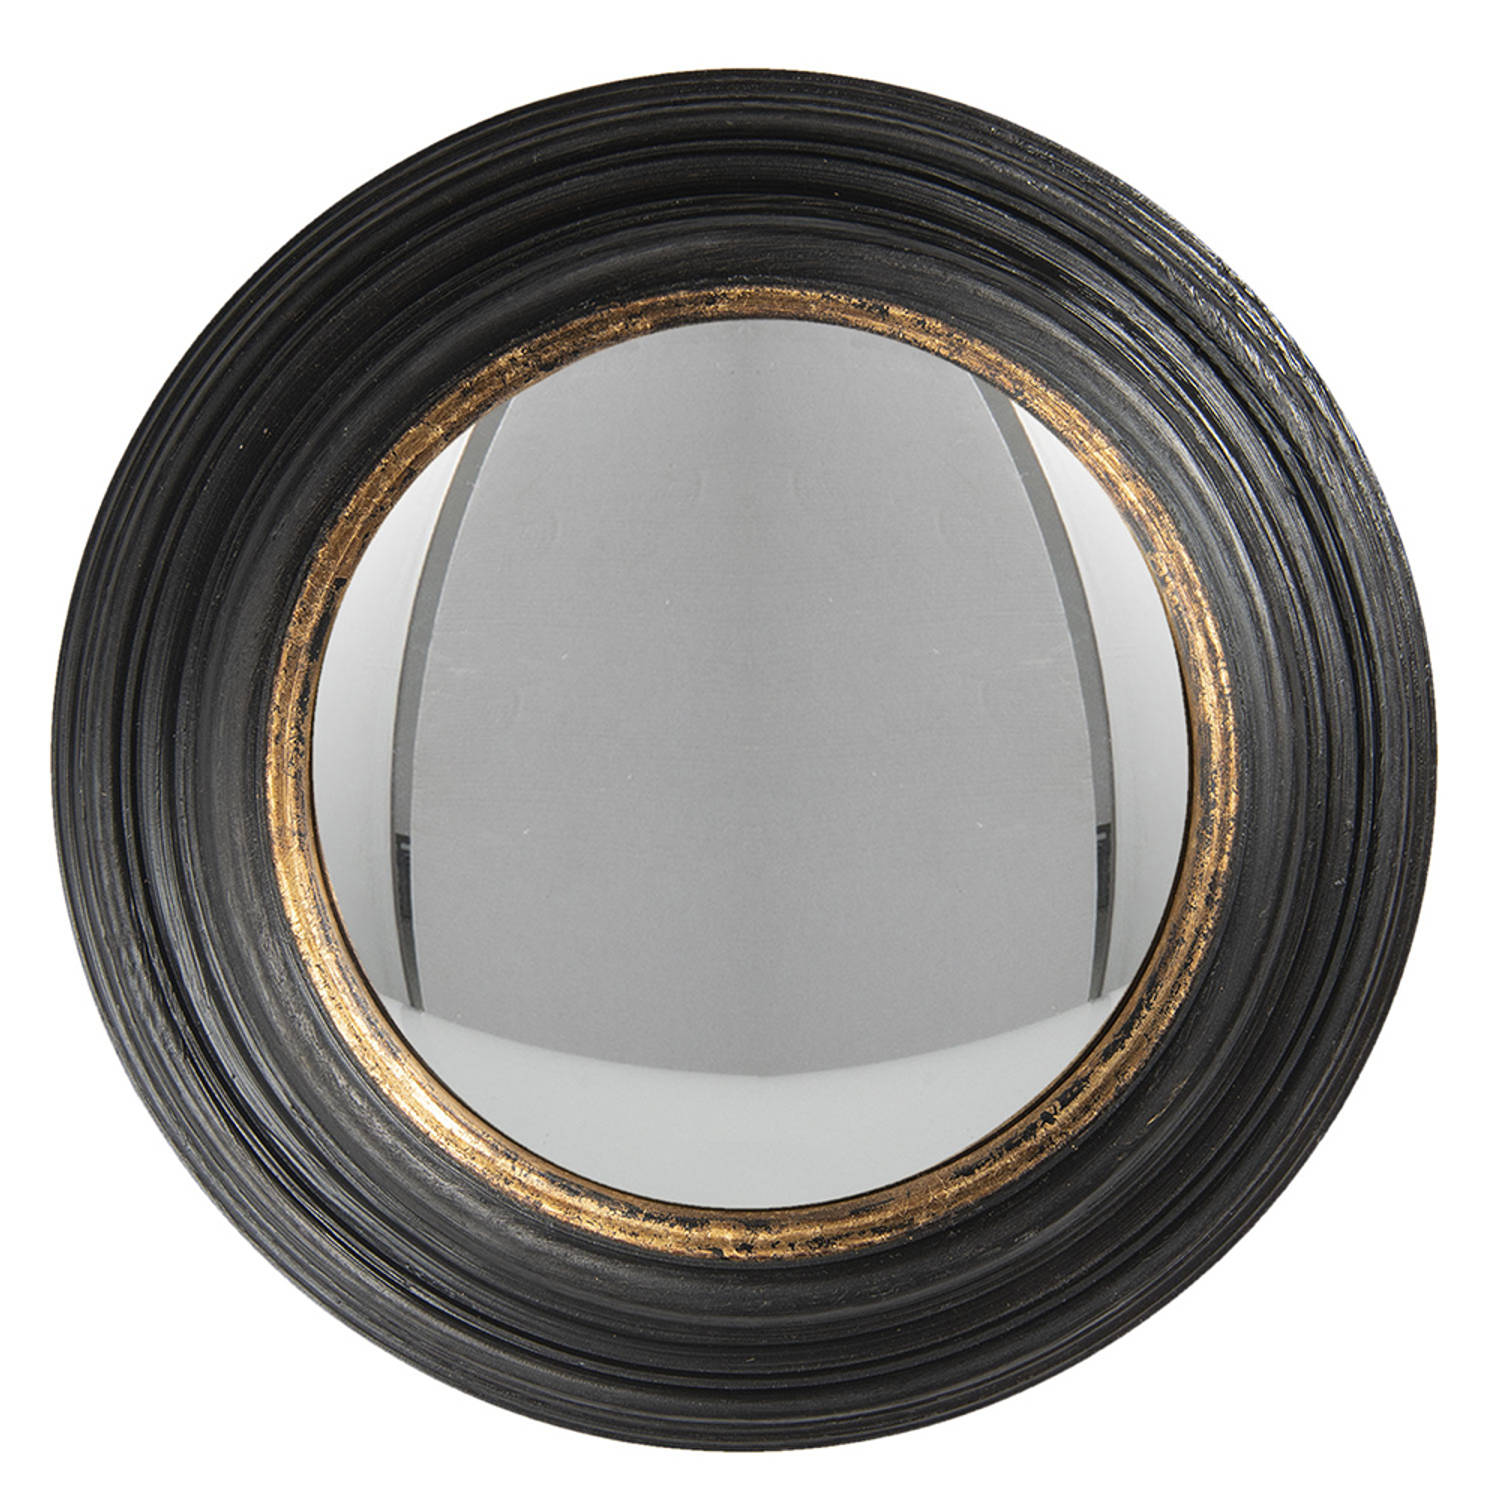 HAES DECO Bolle ronde Spiegel Zwart Ø 38x4 cm Polyurethaan ( PU) Wandspiegel, Spiegel rond, Convex G